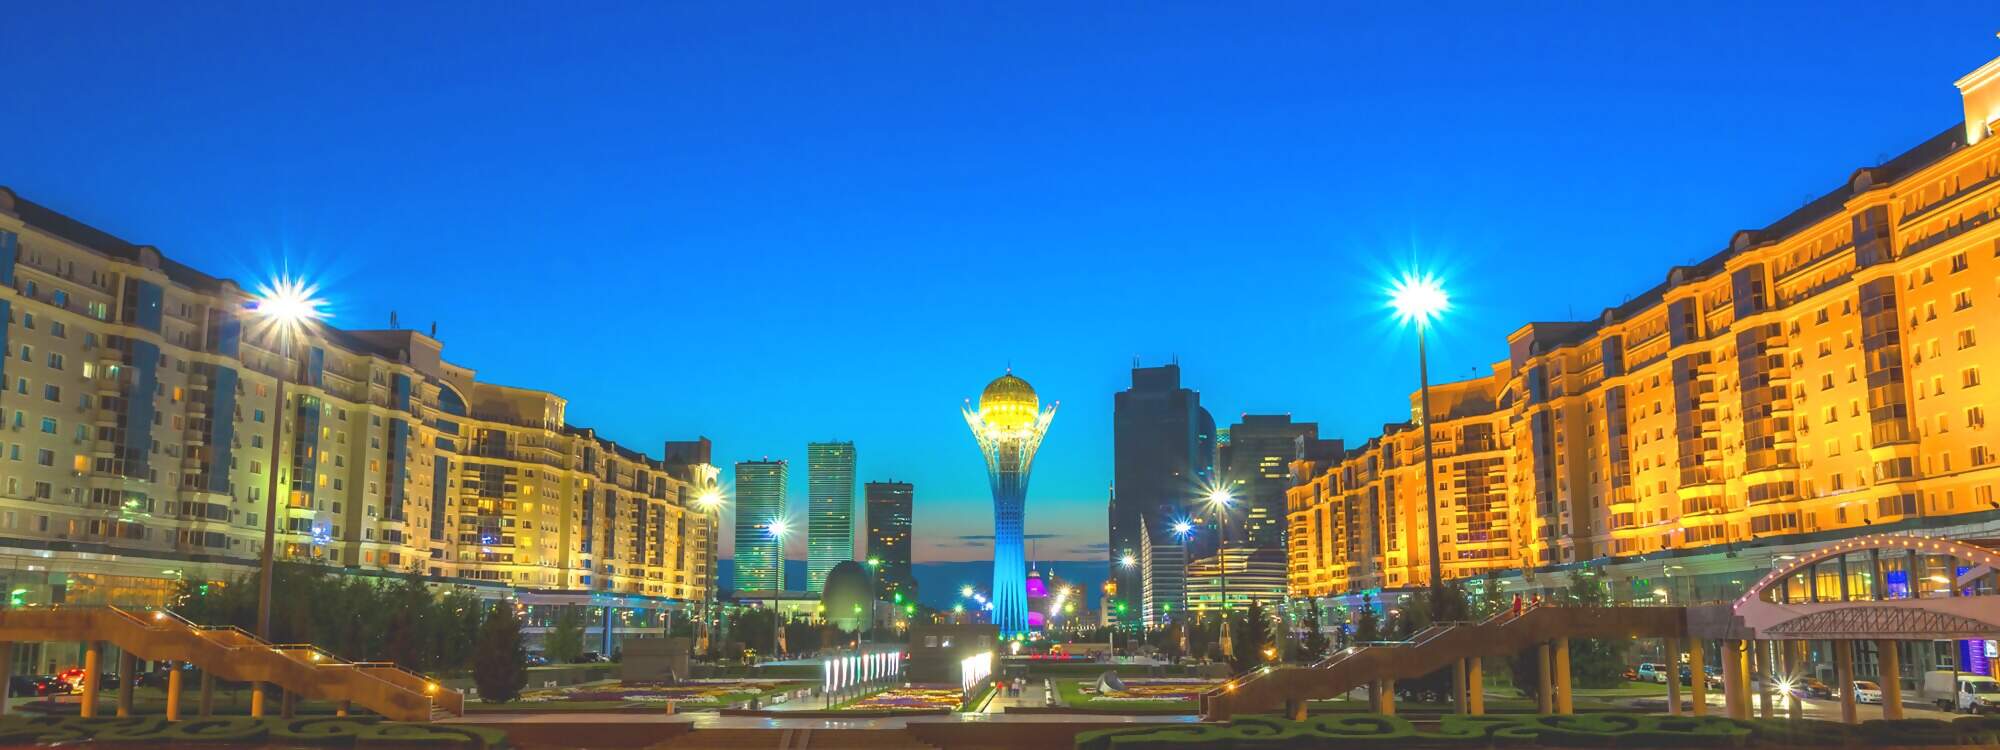 Die Stadt Astana in Kasachstan bei Nacht